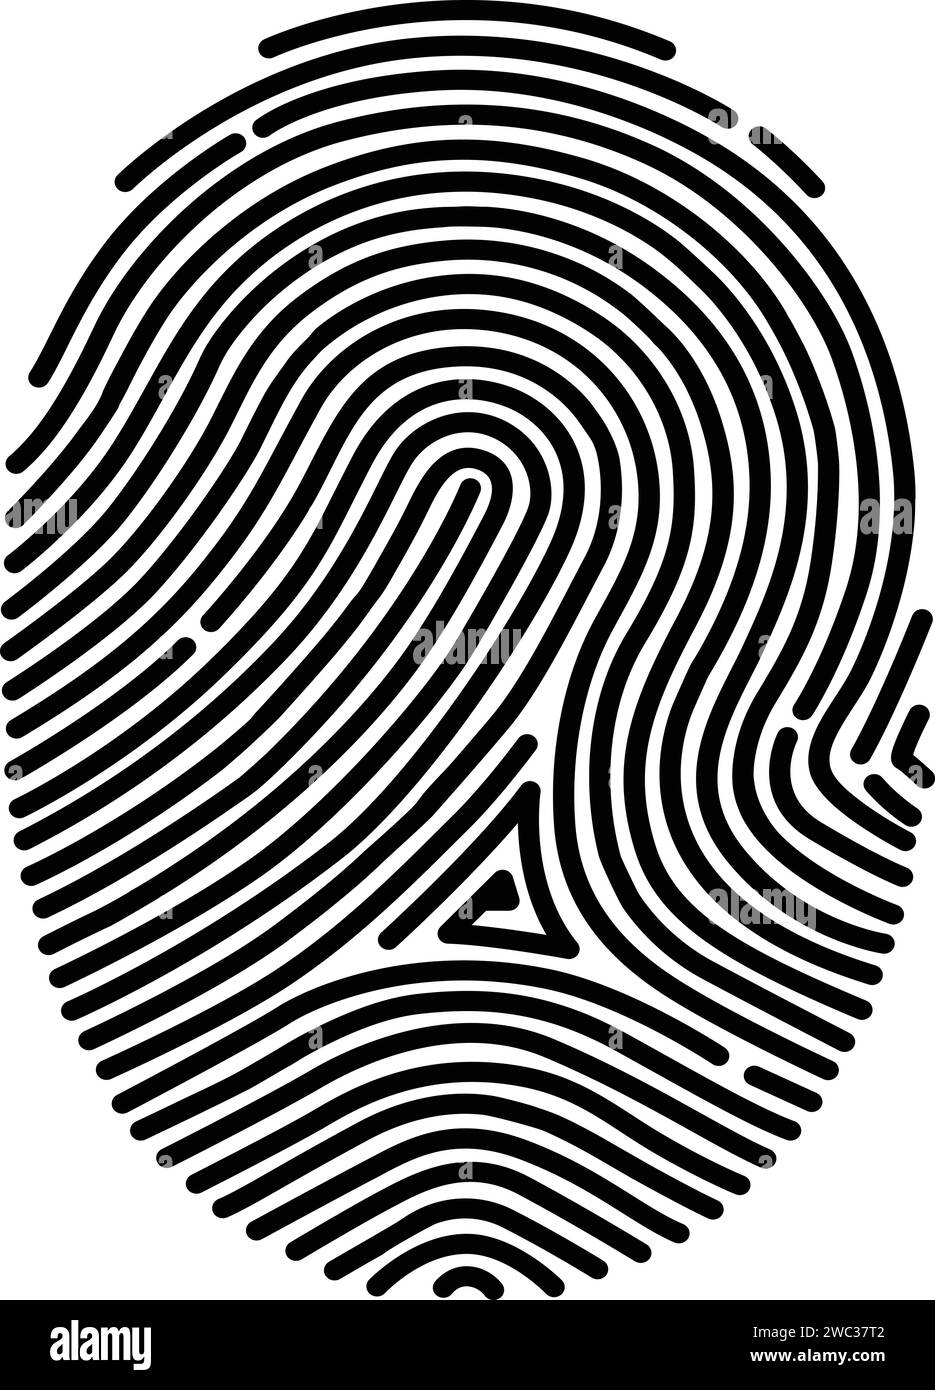 Finger Print, Finger Scan, Finger Identification, Digital Biometric Stock Vector